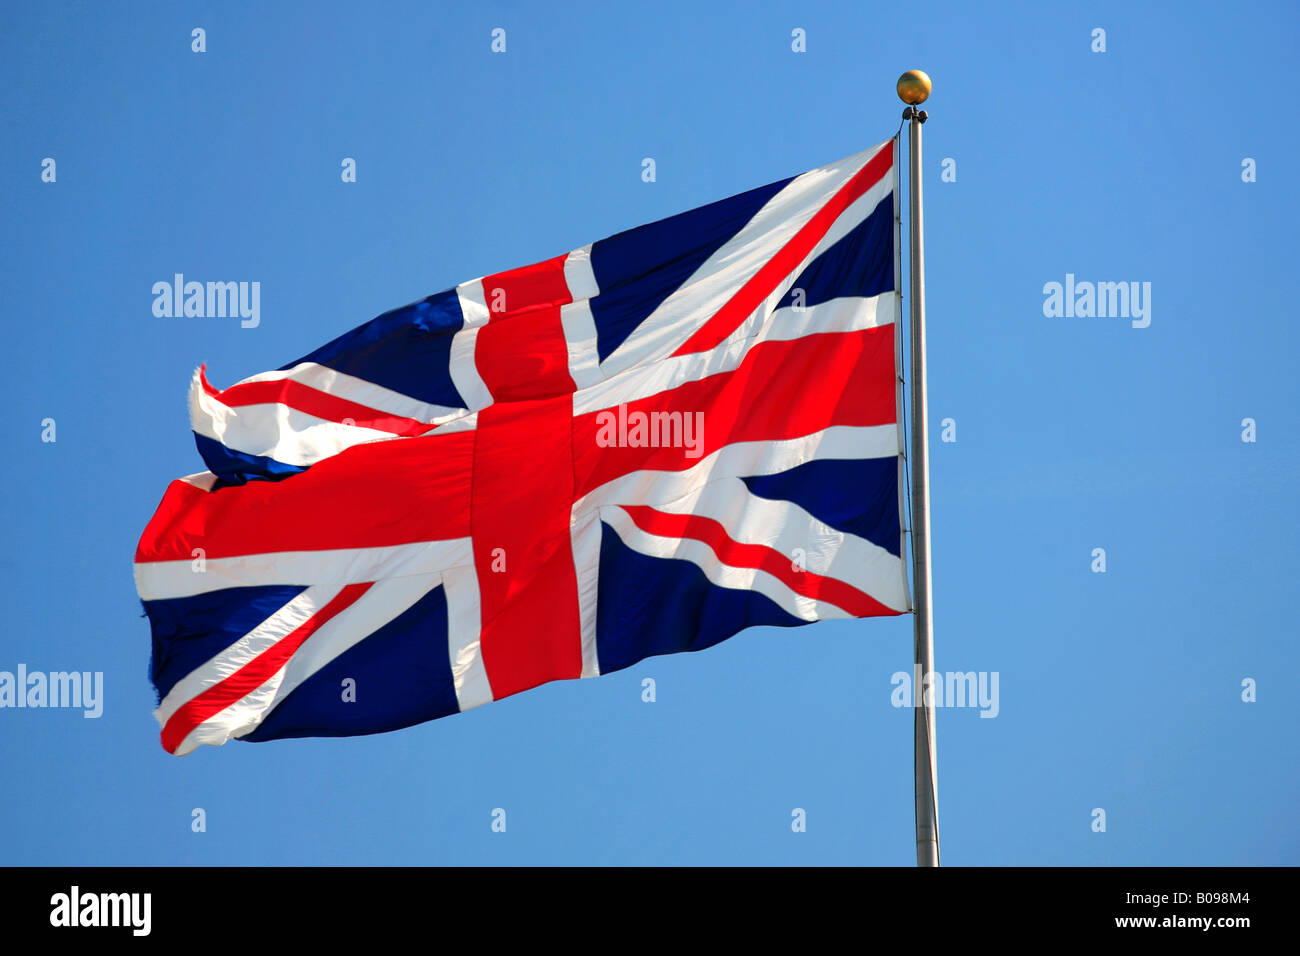 Union jack flag voltigeant dans le vent contre un ciel bleu Angleterre Grande-bretagne UK Banque D'Images